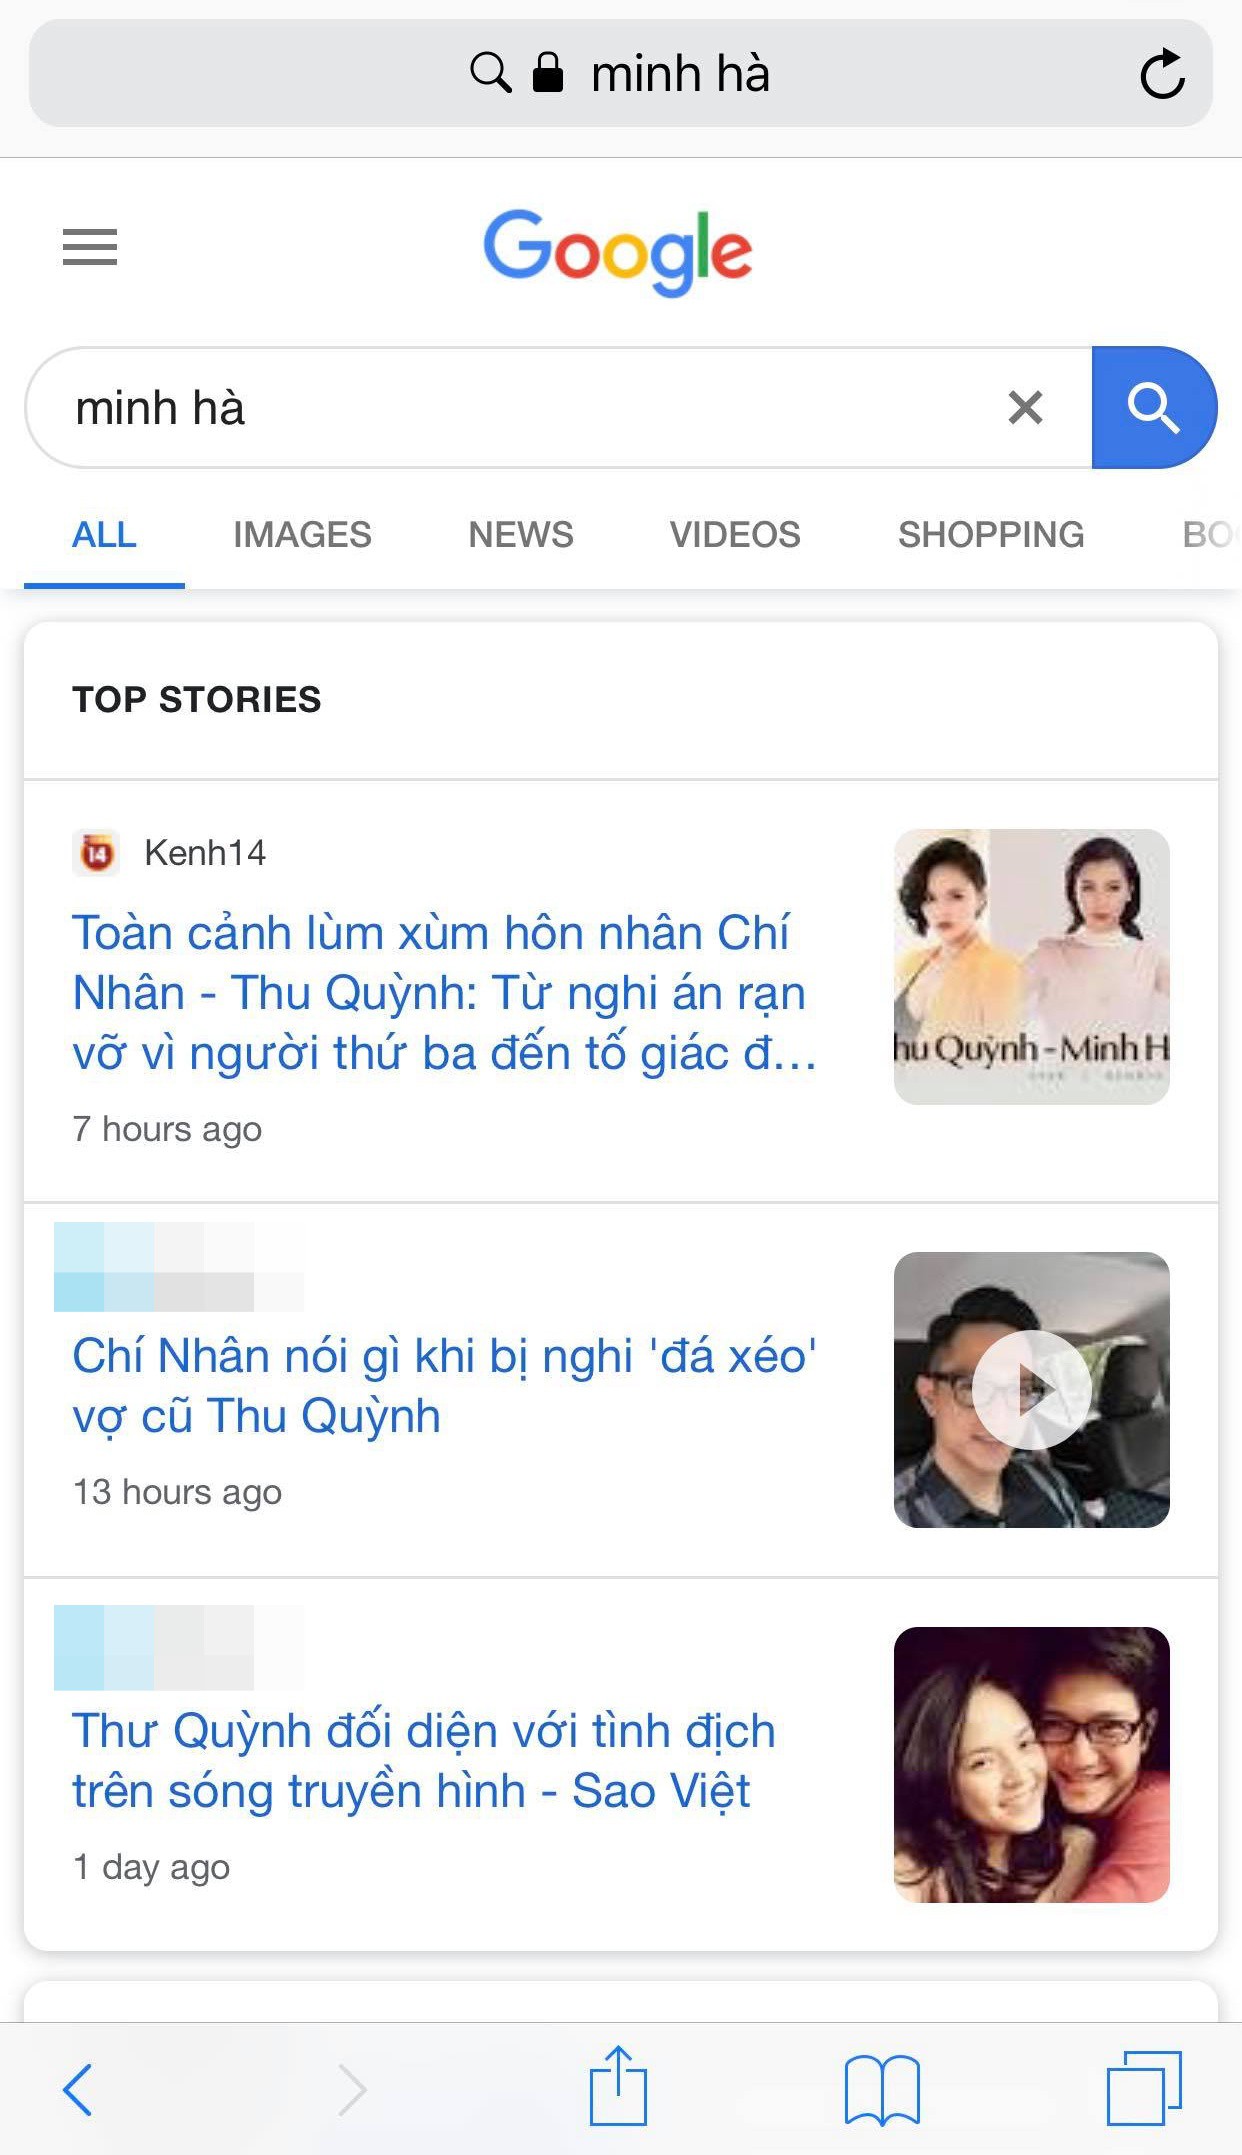 Hậu lùm xùm hôn nhân Google trả kết quả: Thu Quỳnh là diễn viên, Chí Nhân là chồng cũ Thu Quỳnh còn Minh Hà là nobody - Ảnh 4.